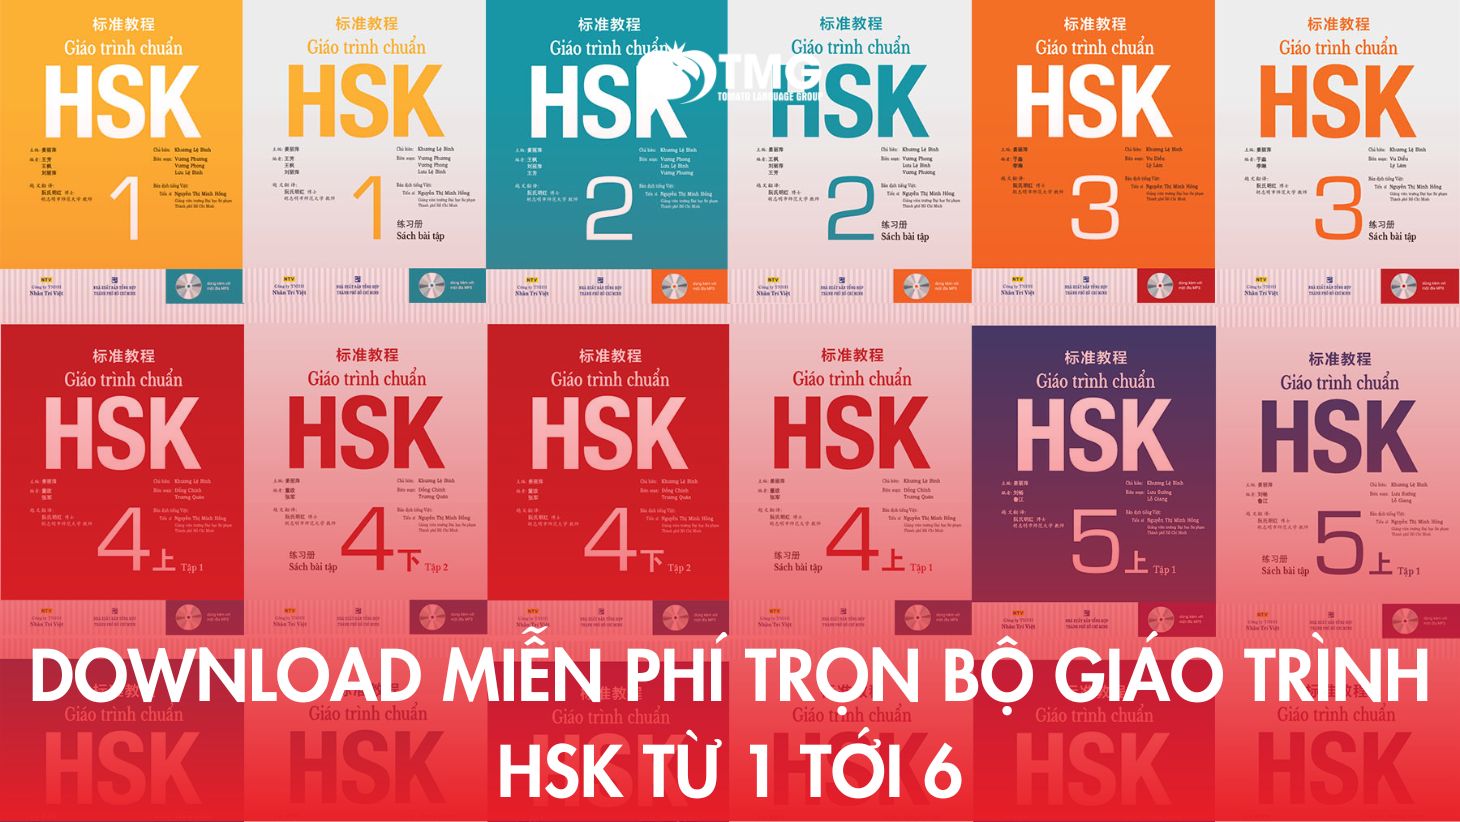 Download miễn phí trọn bộ giáo trình HSK từ 1 tới 6